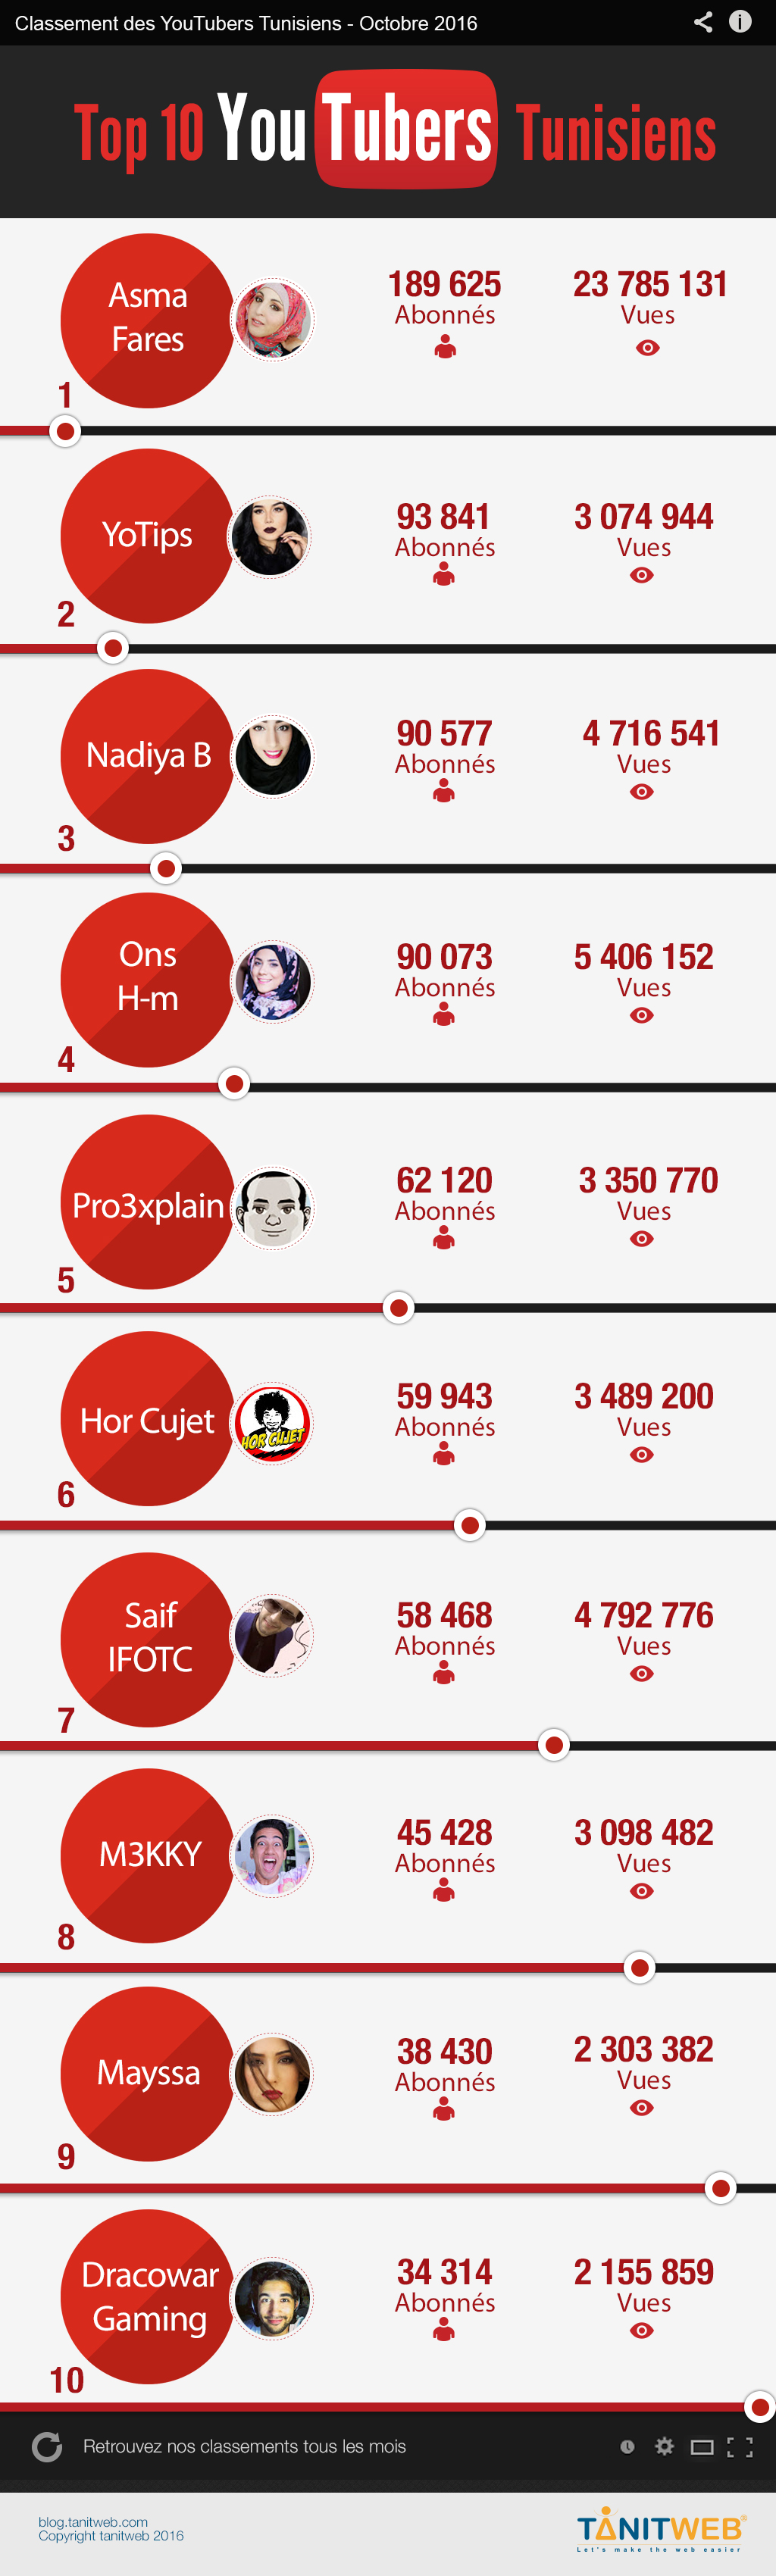 TOP 10 YouTubers Tunisiens Octobre 2016